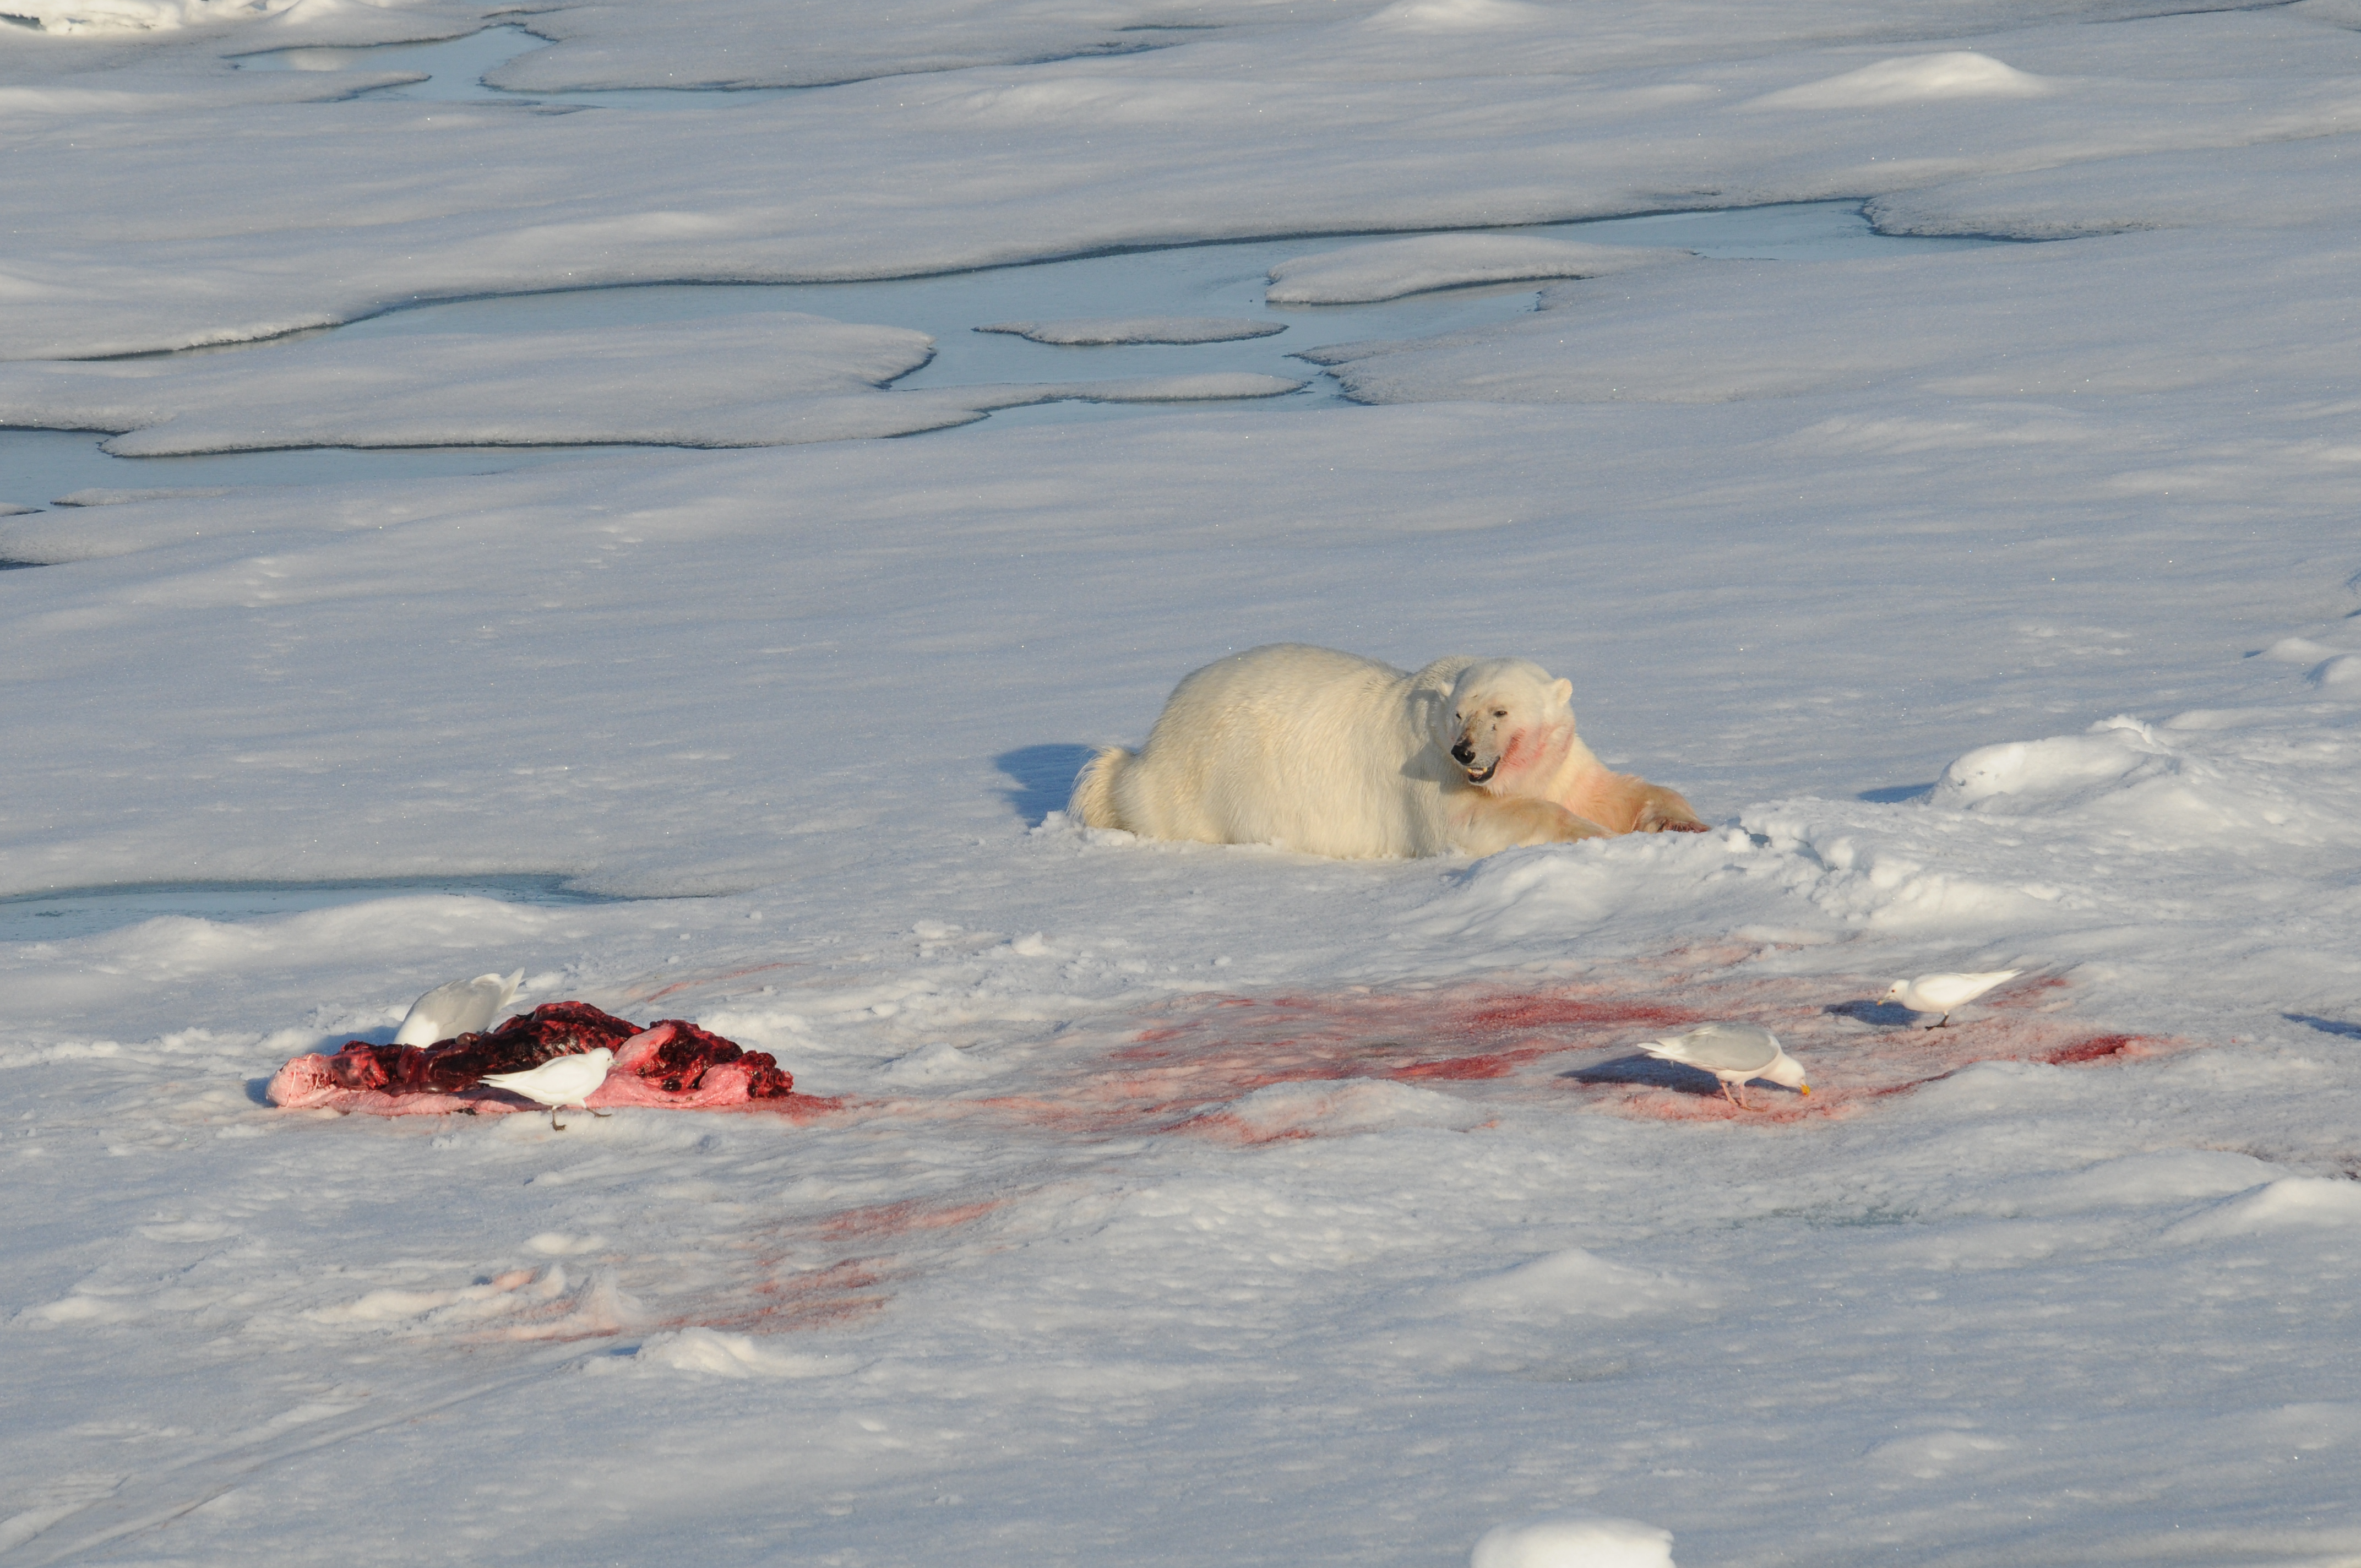 Polar bear hunting behaviour